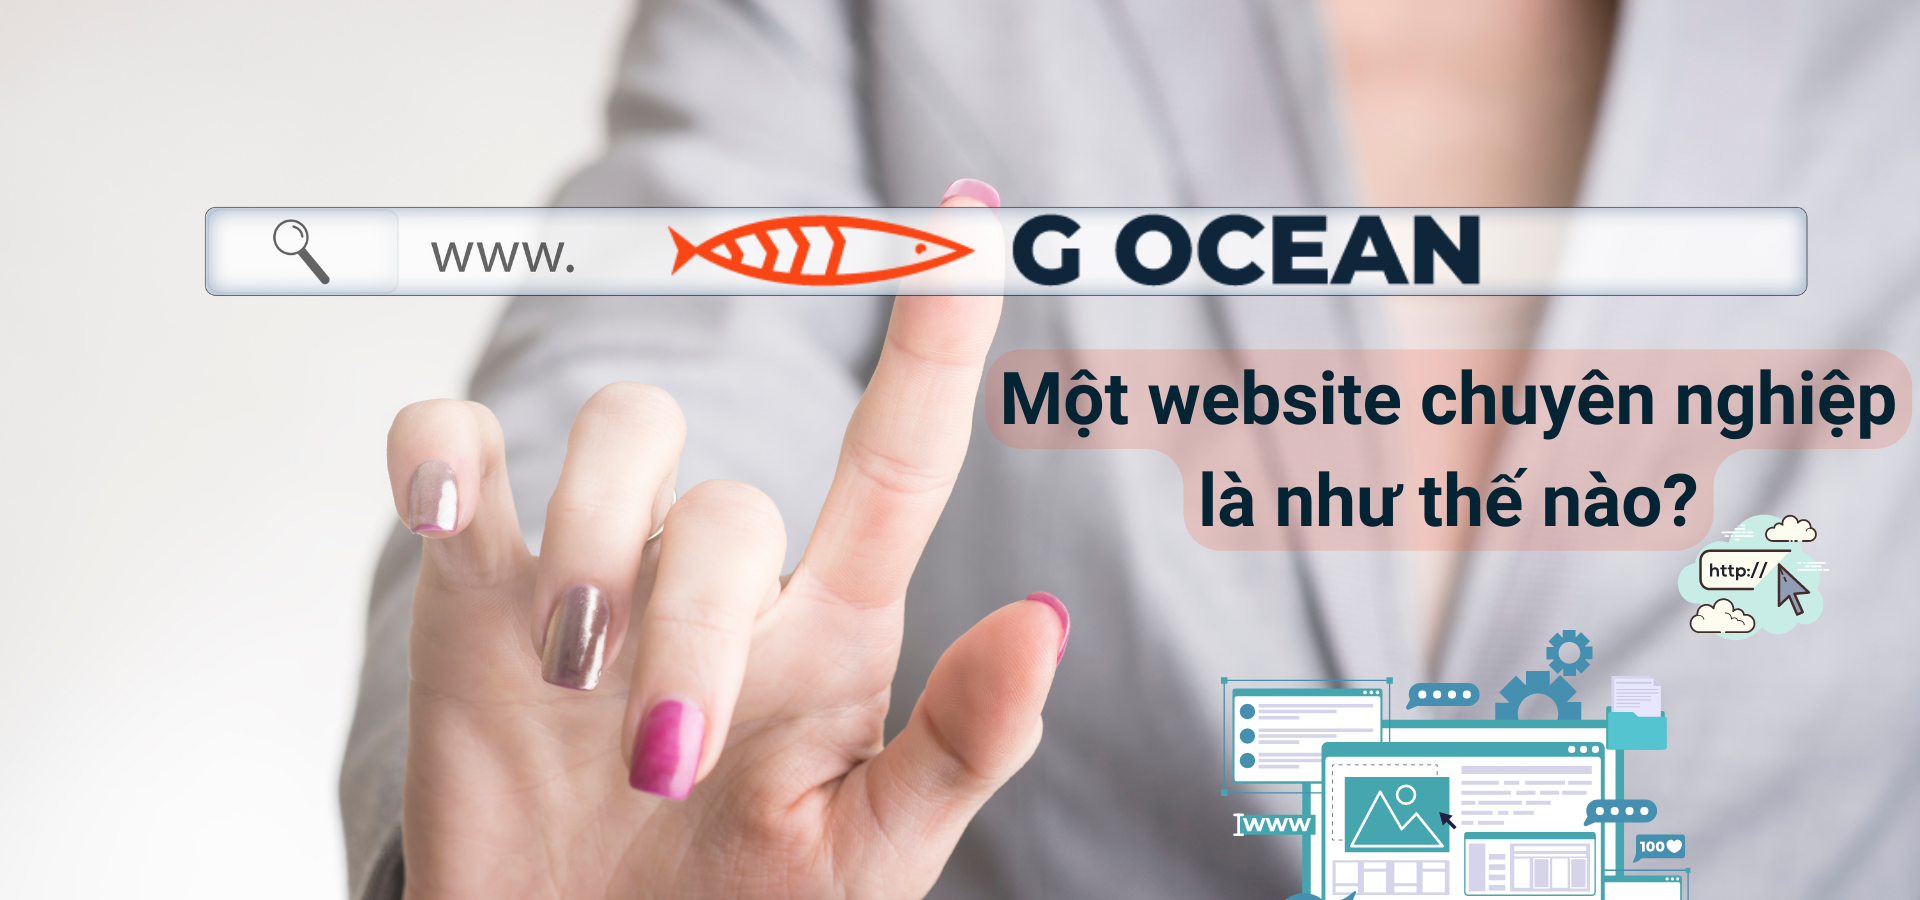 G Ocean Labs - Một website chuyên nghiệp là như thế nào?